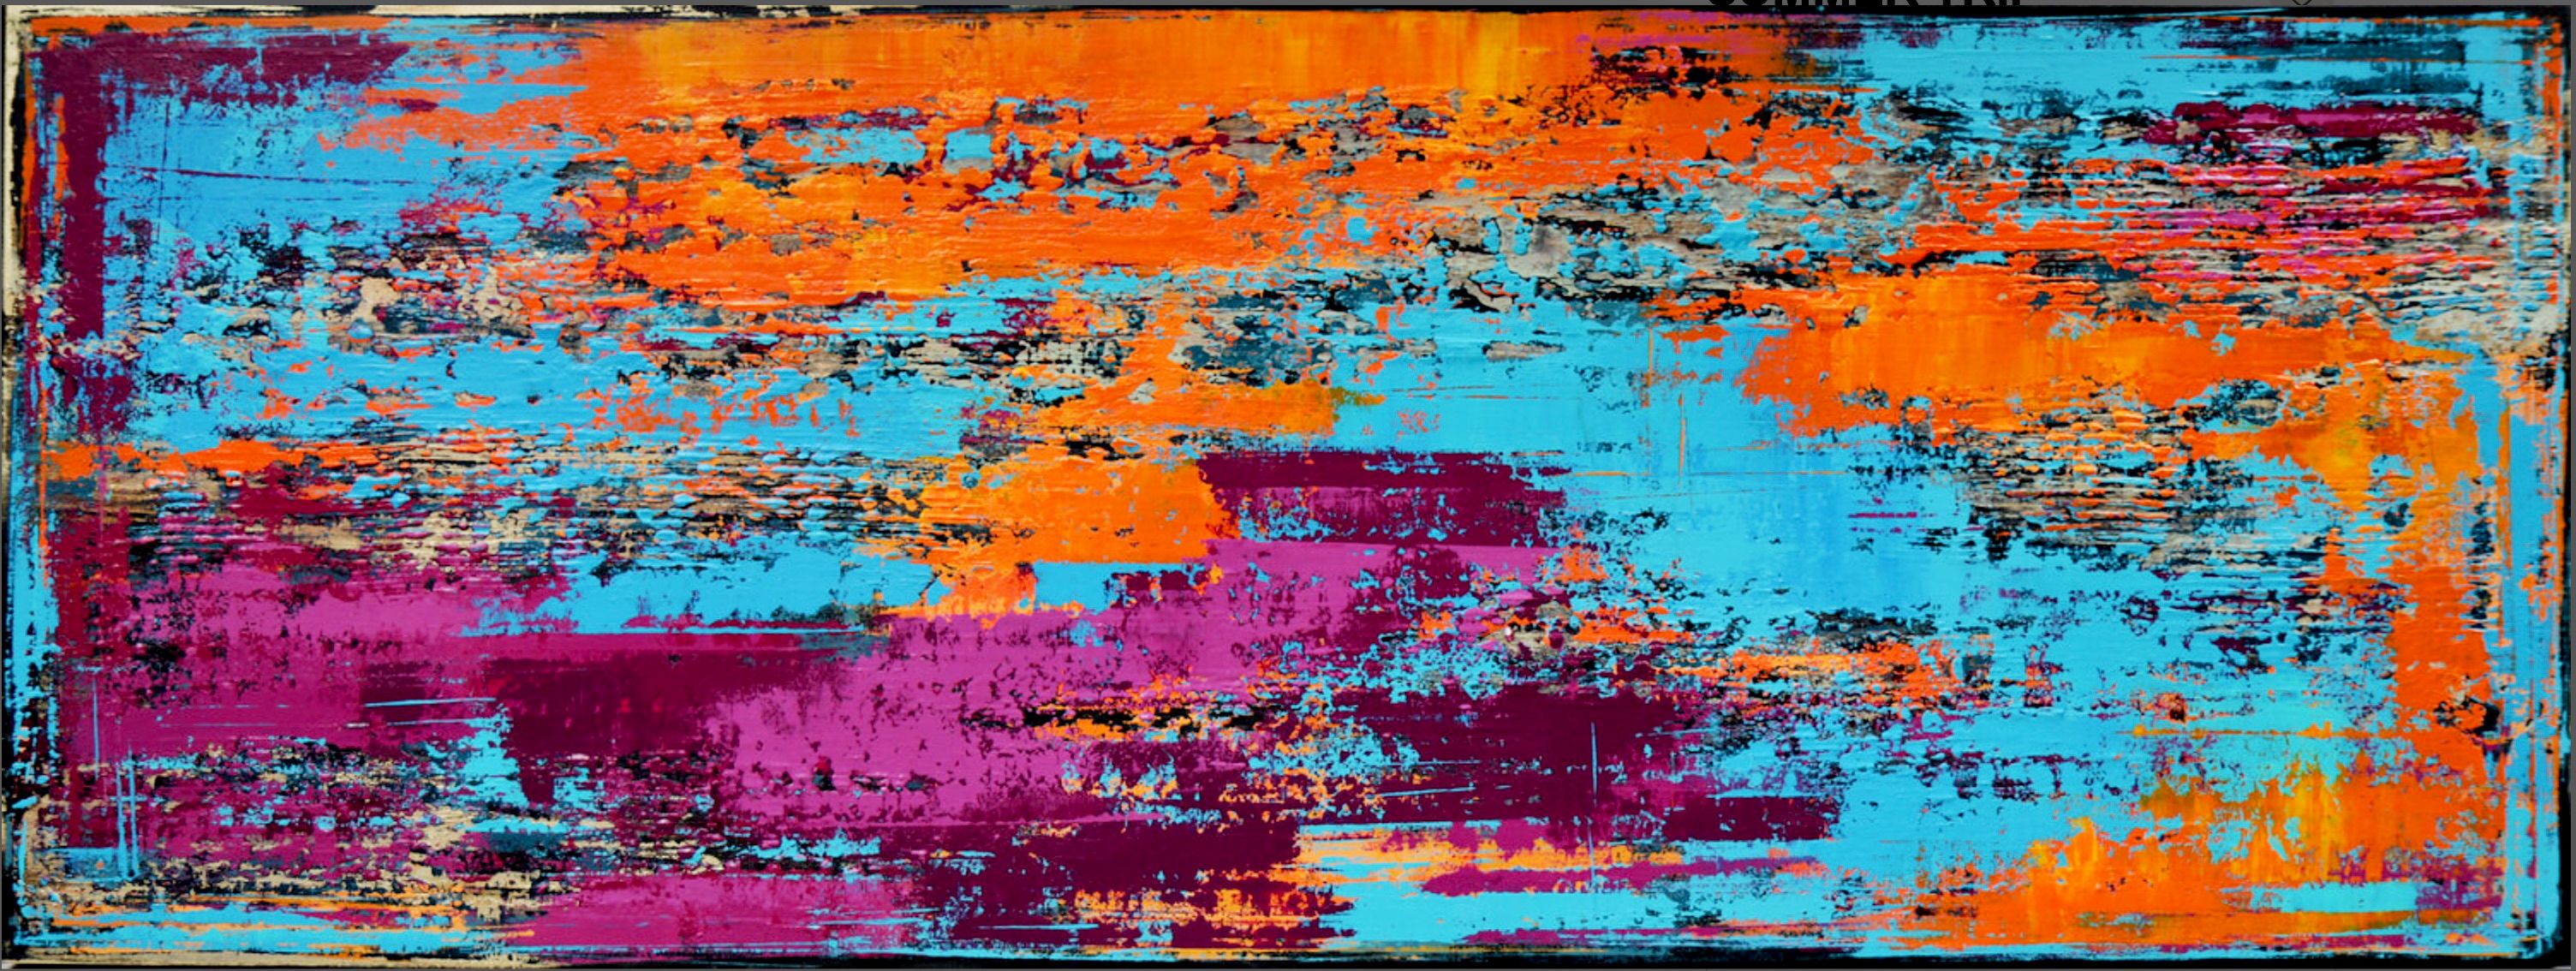 En "VIAJE DE VERANO" de Inez Froehlich pintura abstracta colorista con estructuras. Colores cálidos y vivos en naranja, azul, turquesa y violeta. El estilo del cuadro es shabby chic, estilo industrial, vintage, retro.